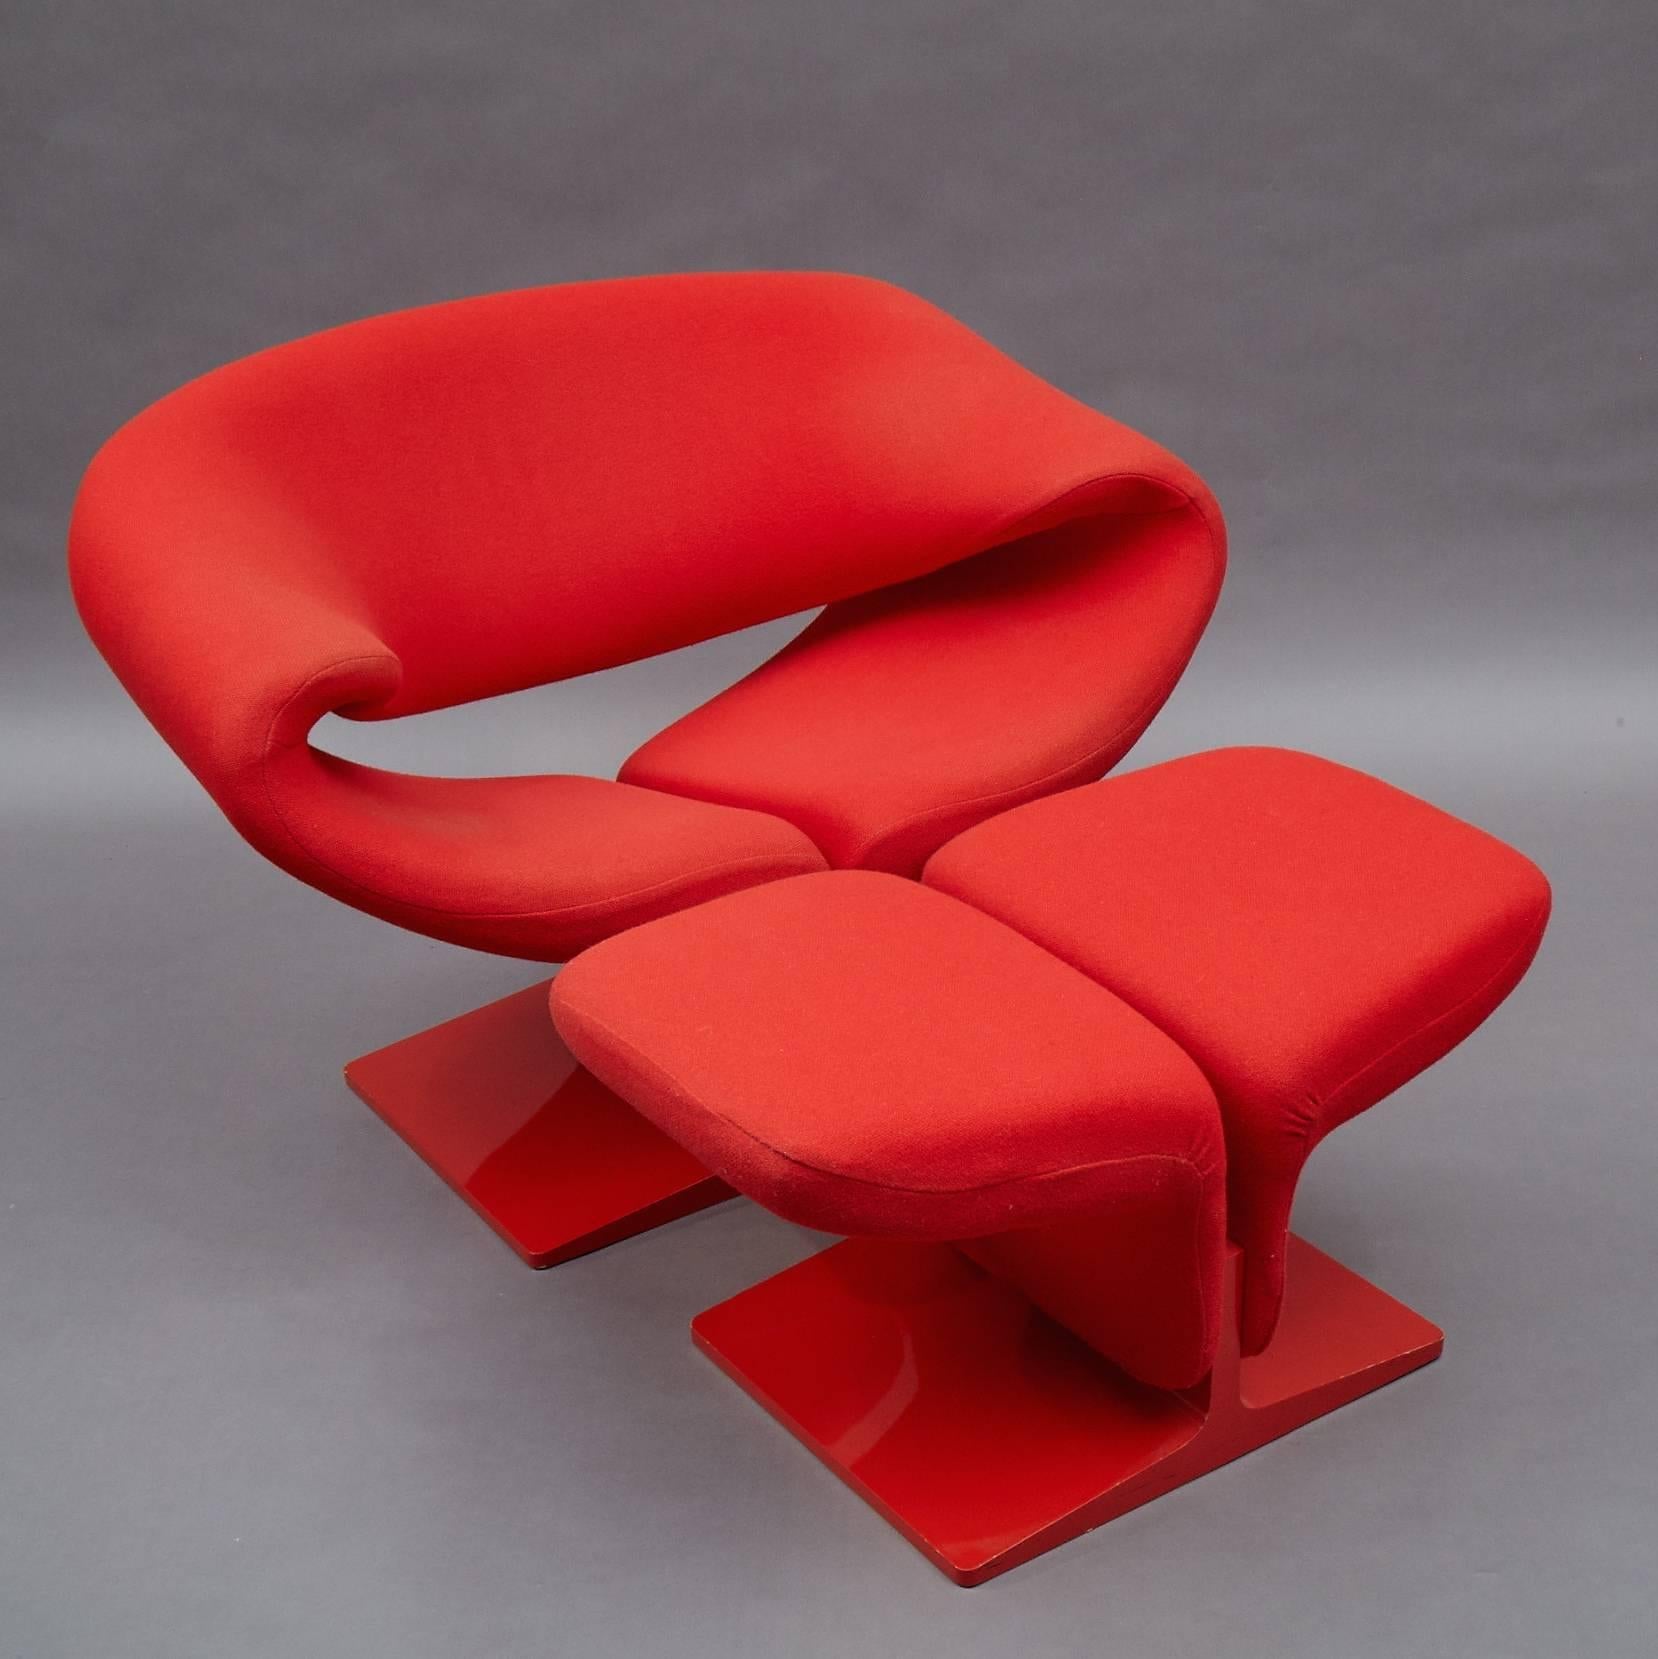 Dieser ikonische und innovative Bandstuhl mit passender Ottomane, der von Pierre Paulin für Artifort entworfen wurde, ist eine atemberaubende organische Form aus konturiertem Stahlrohr, die ergonomisch für Komfort ausgelegt ist. Sie sind einfarbig